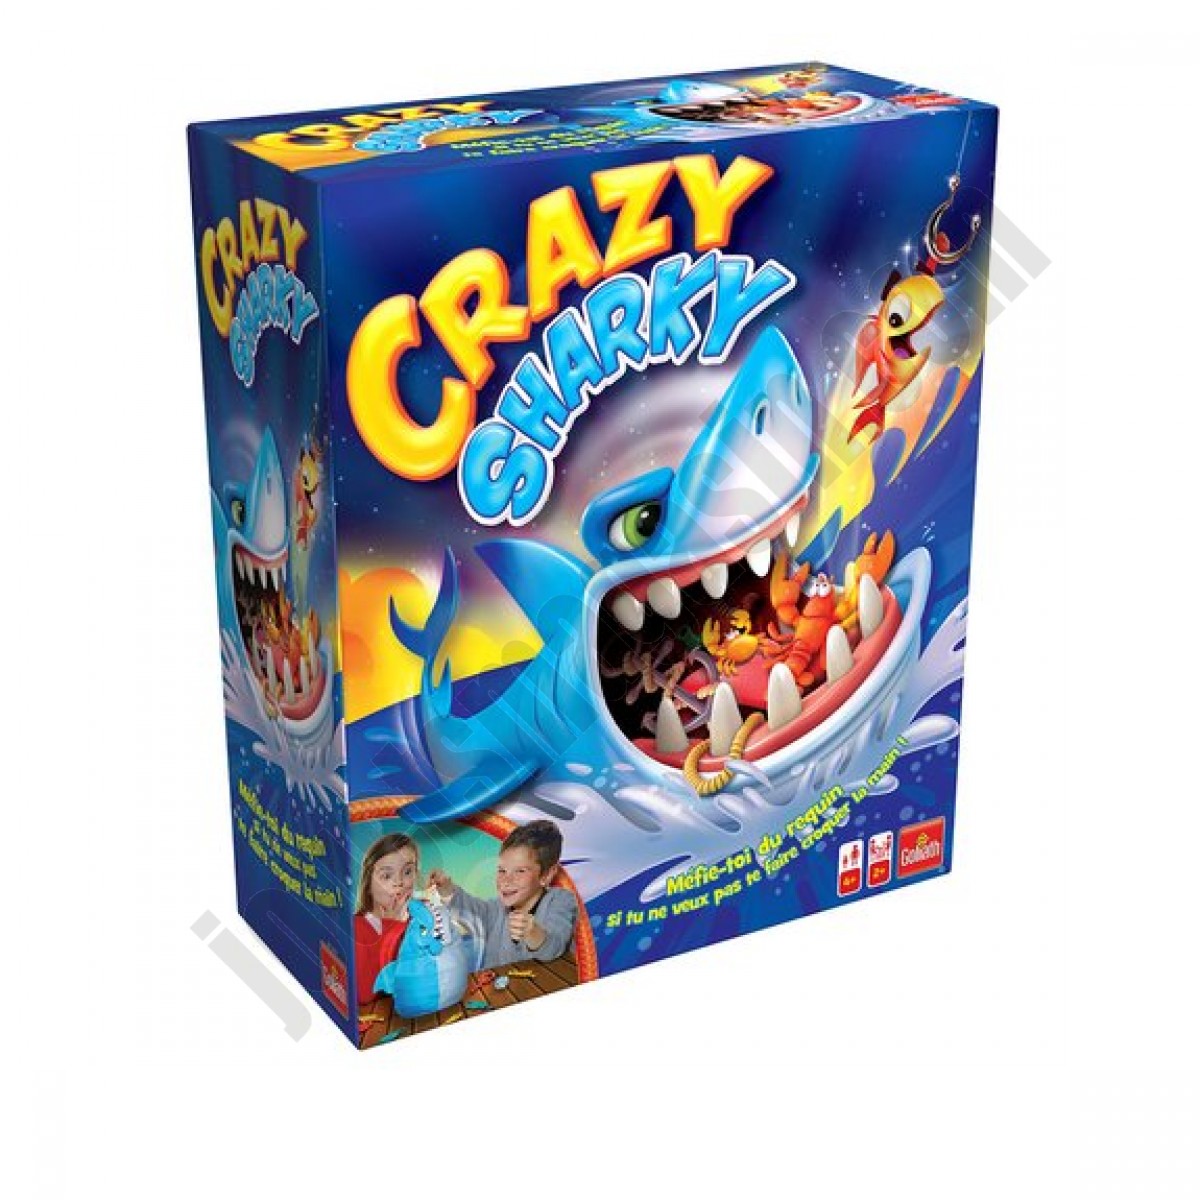 Crazy Sharky En promotion - Crazy Sharky En promotion